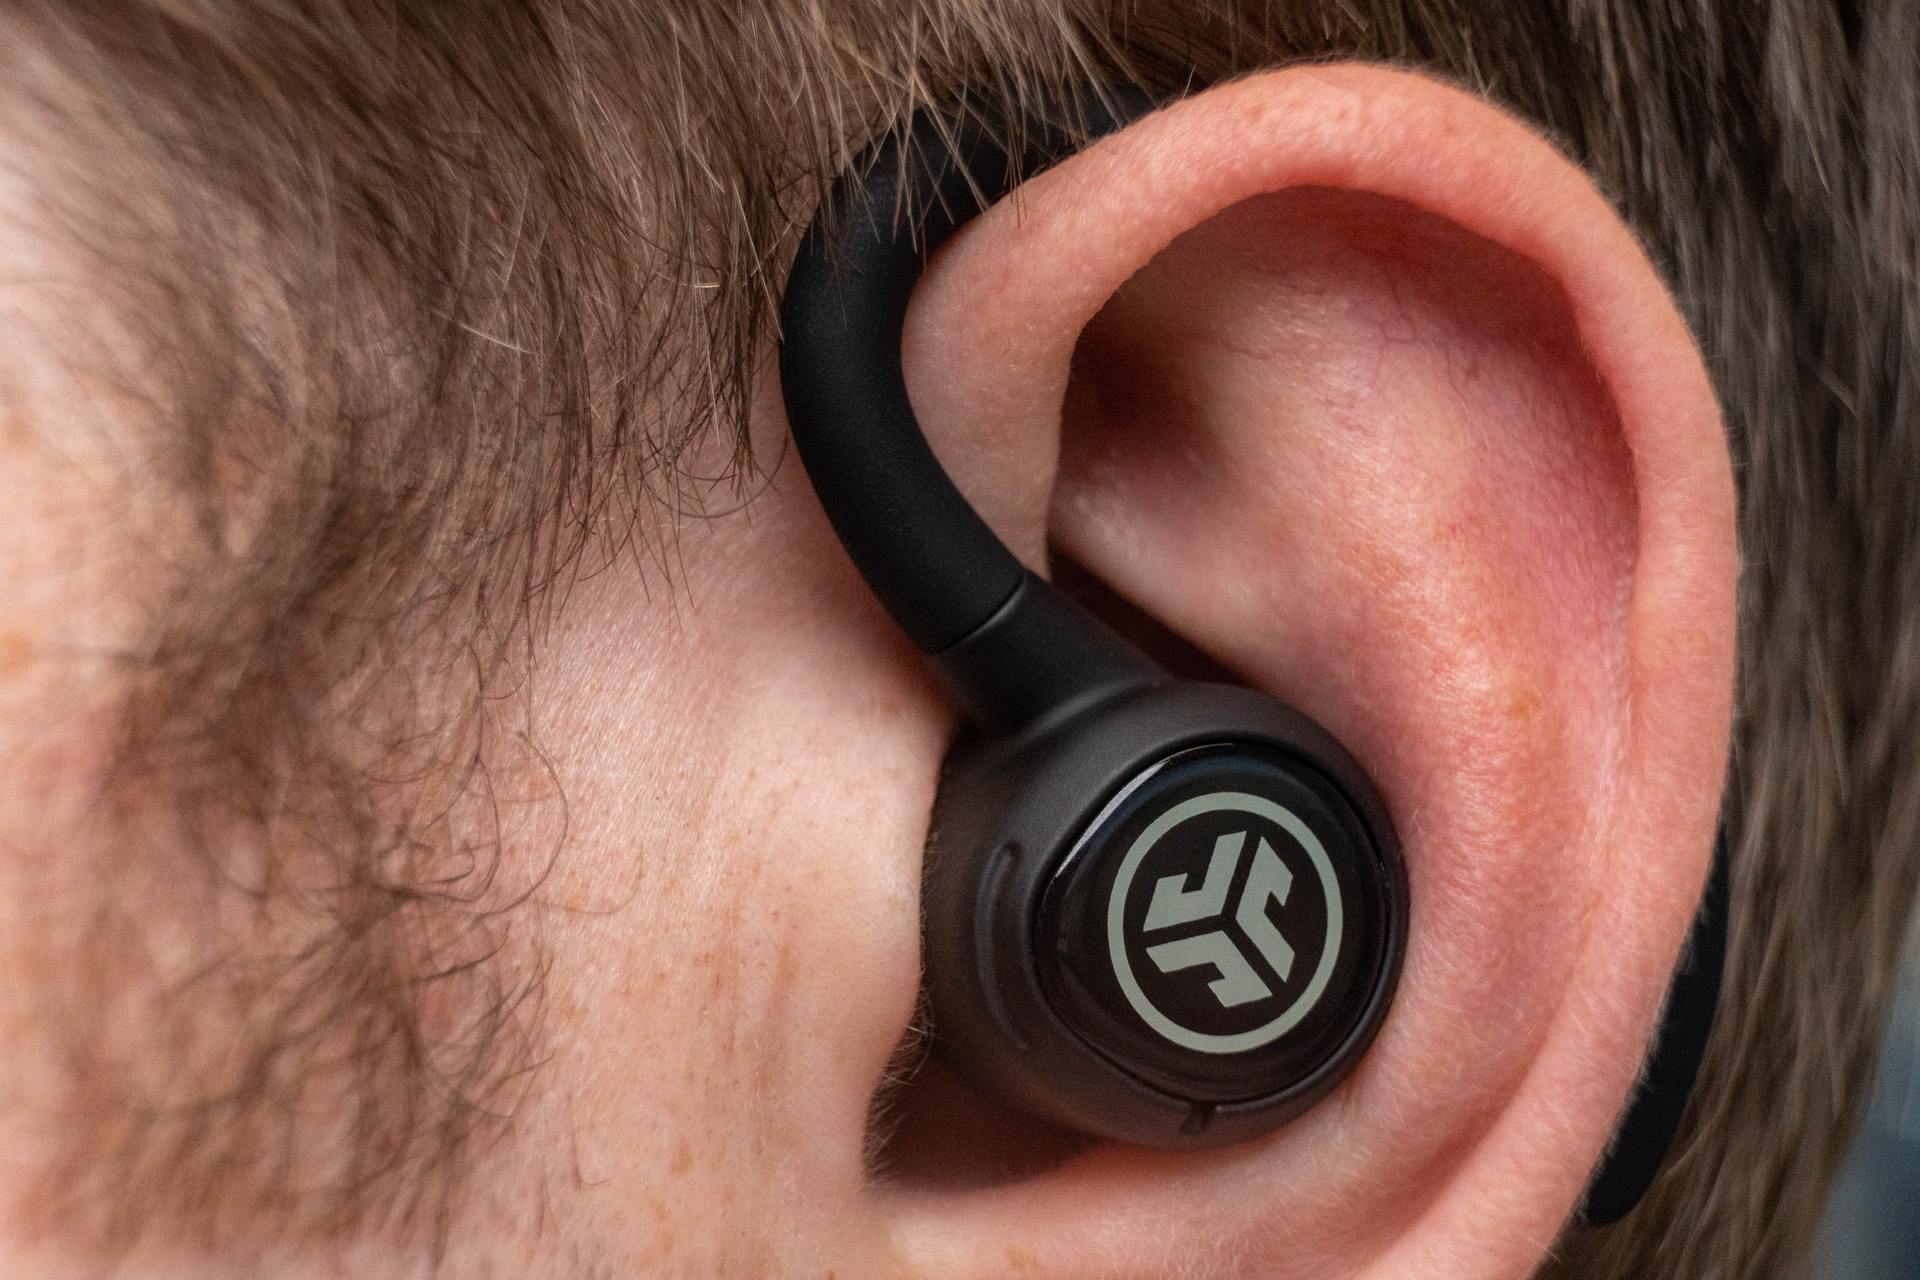 JLab Go Air Sport True headphones review: Cheap running headphones